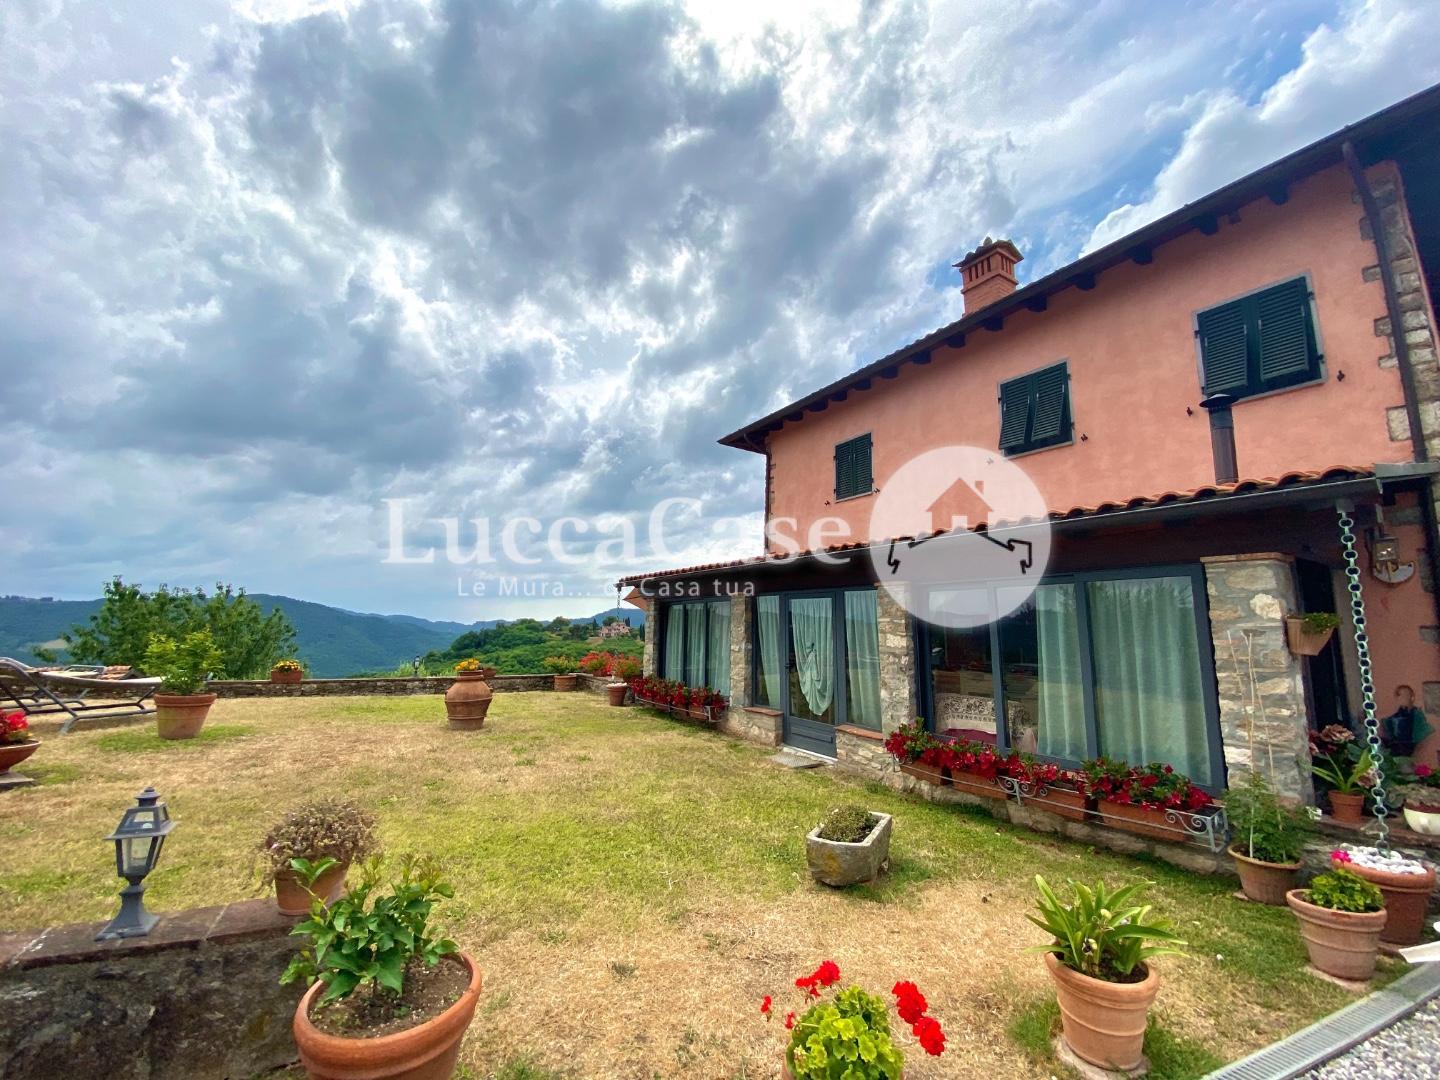 Farmhouse for sale in Pescaglia (LU)